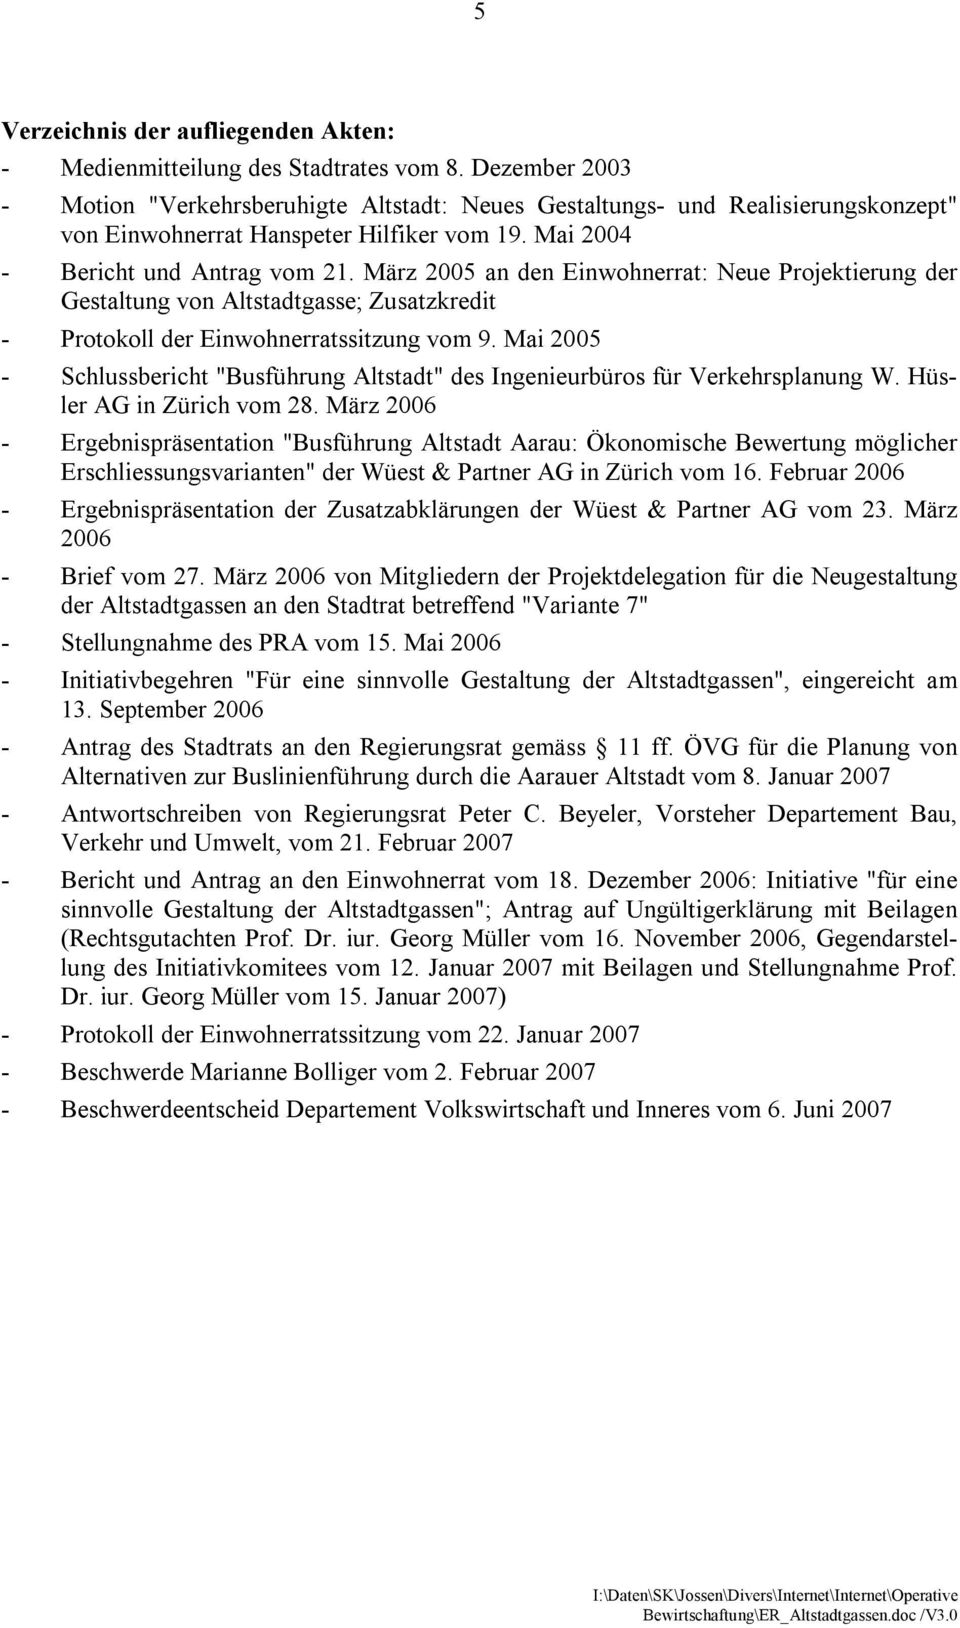 März 2005 an den Einwohnerrat: Neue Projektierung der Gestaltung von Altstadtgasse; Zusatzkredit - Protokoll der Einwohnerratssitzung vom 9.